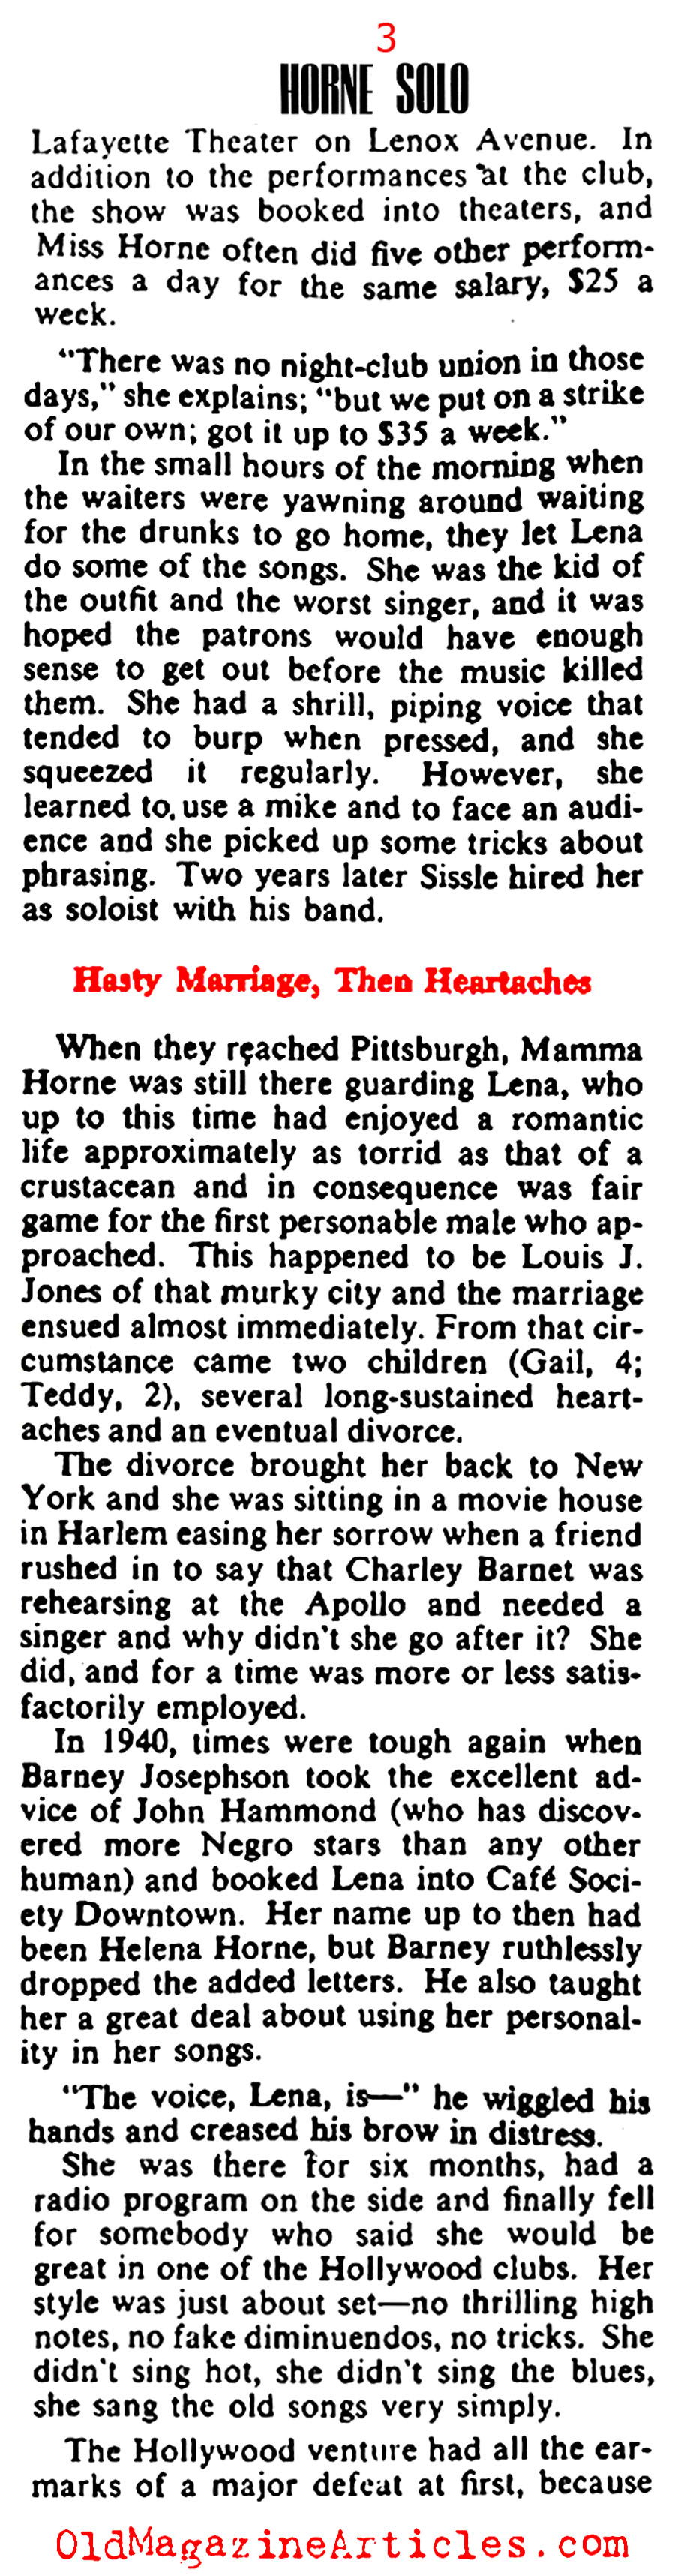 Lena Horne (Collier's Magazine, 1943)